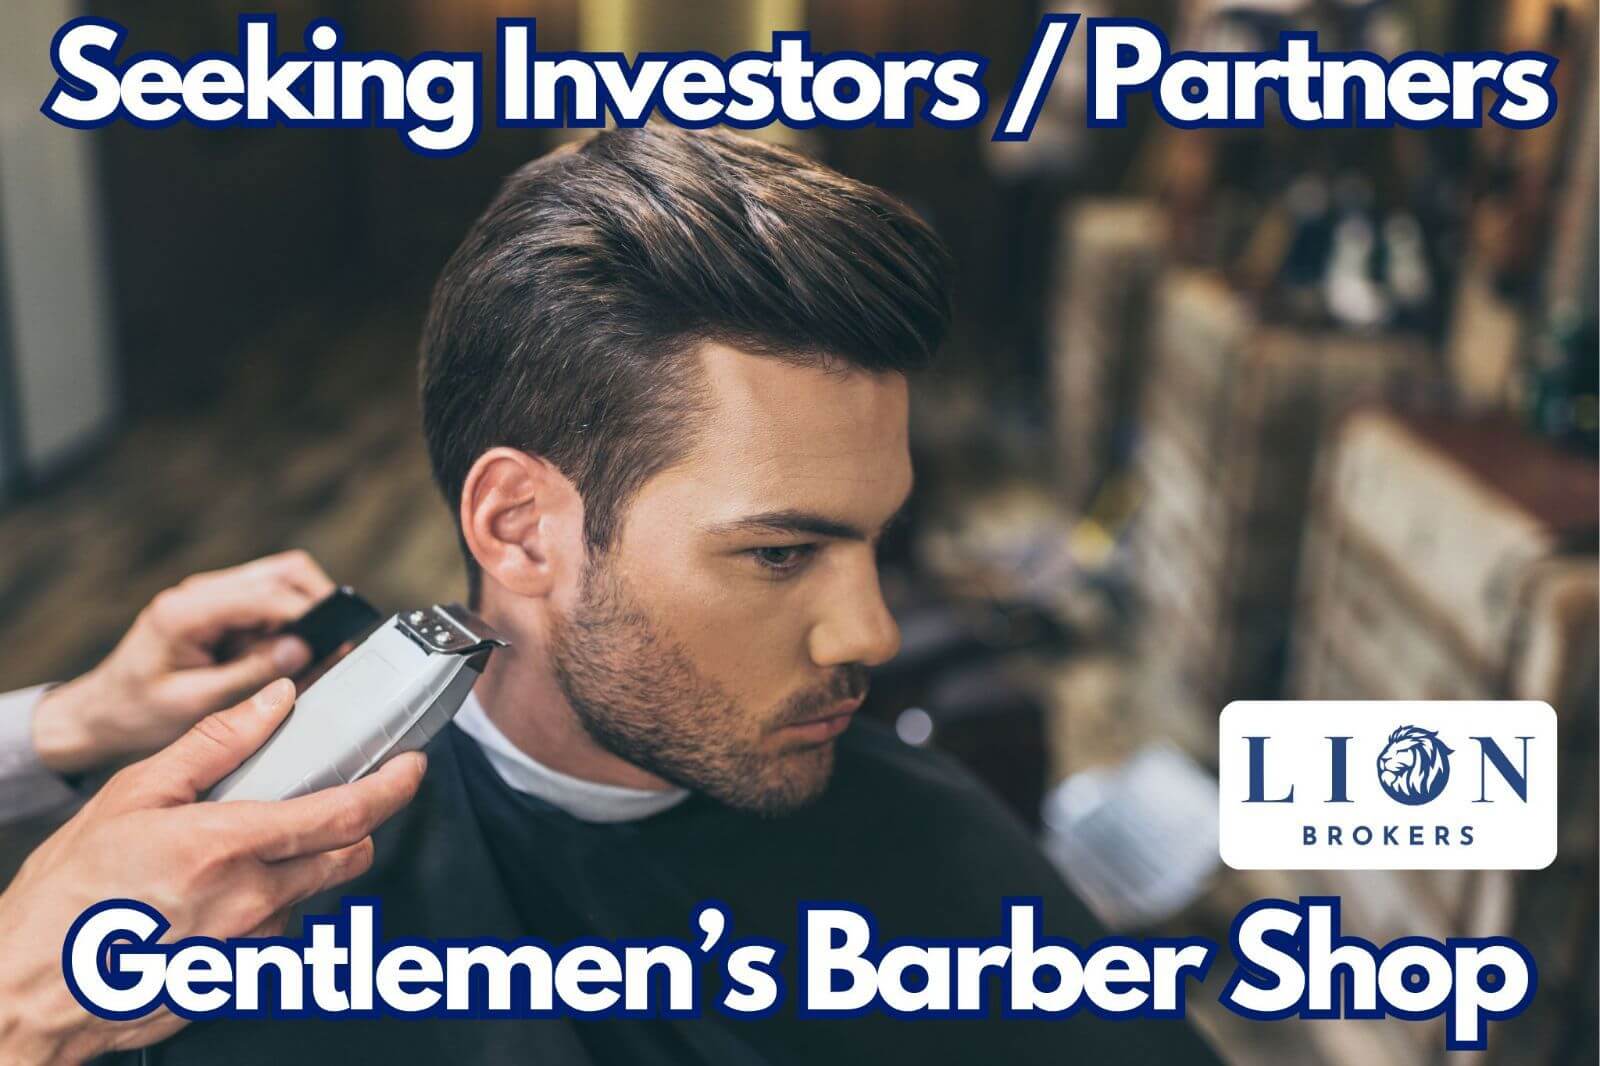 Gentlemen's Barbershop Looking To Expand